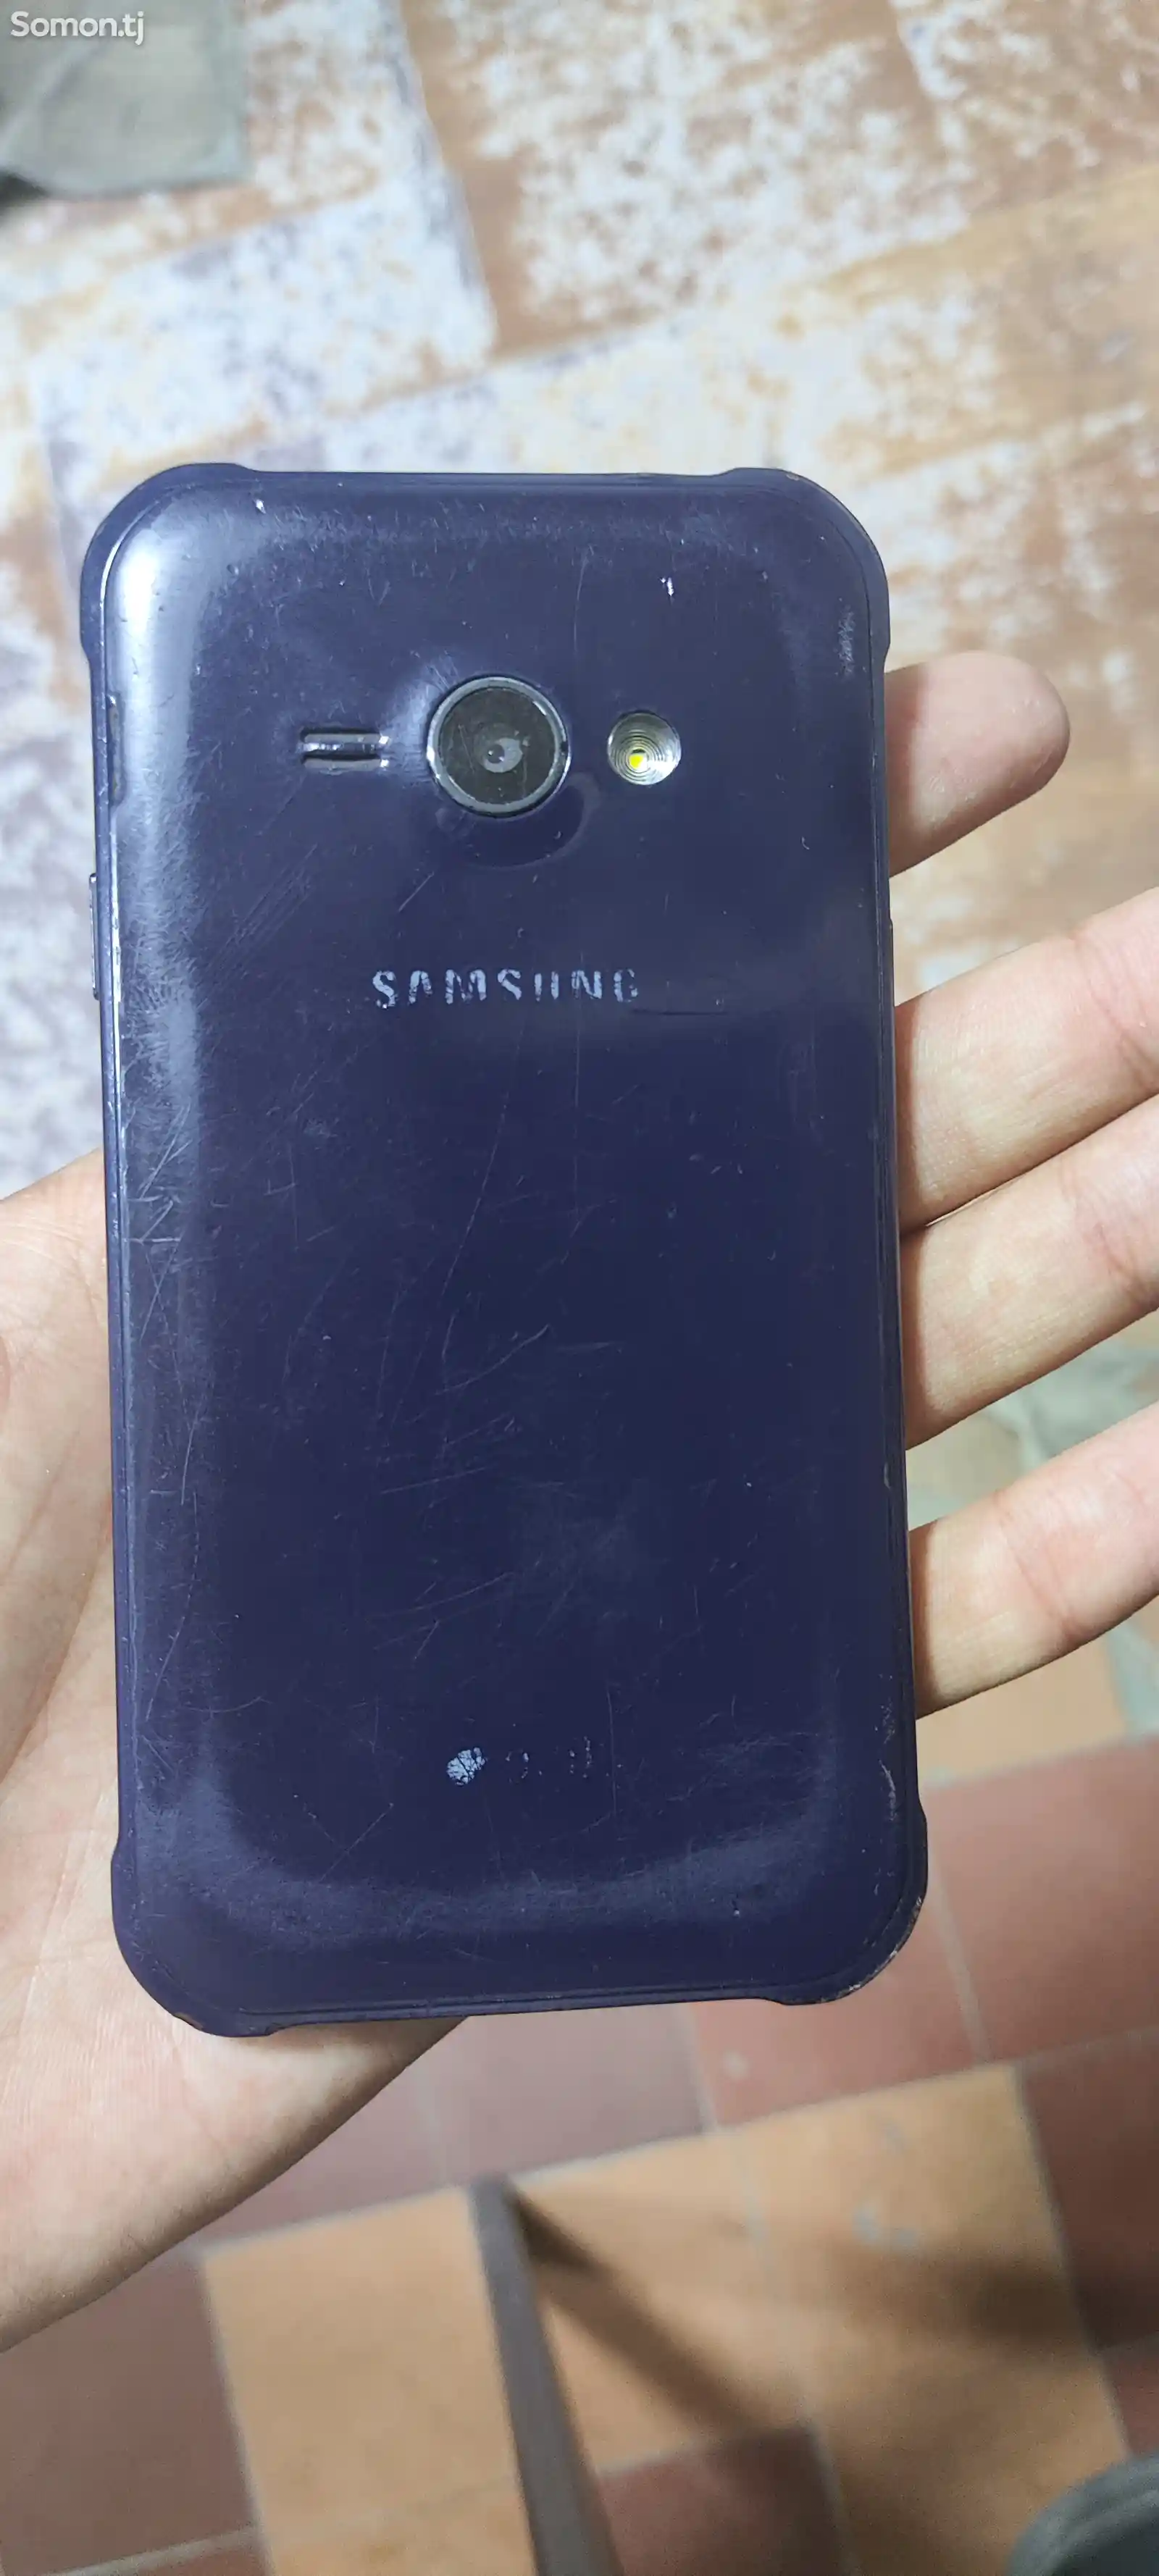 Samsung Galaxy J1 ace-2